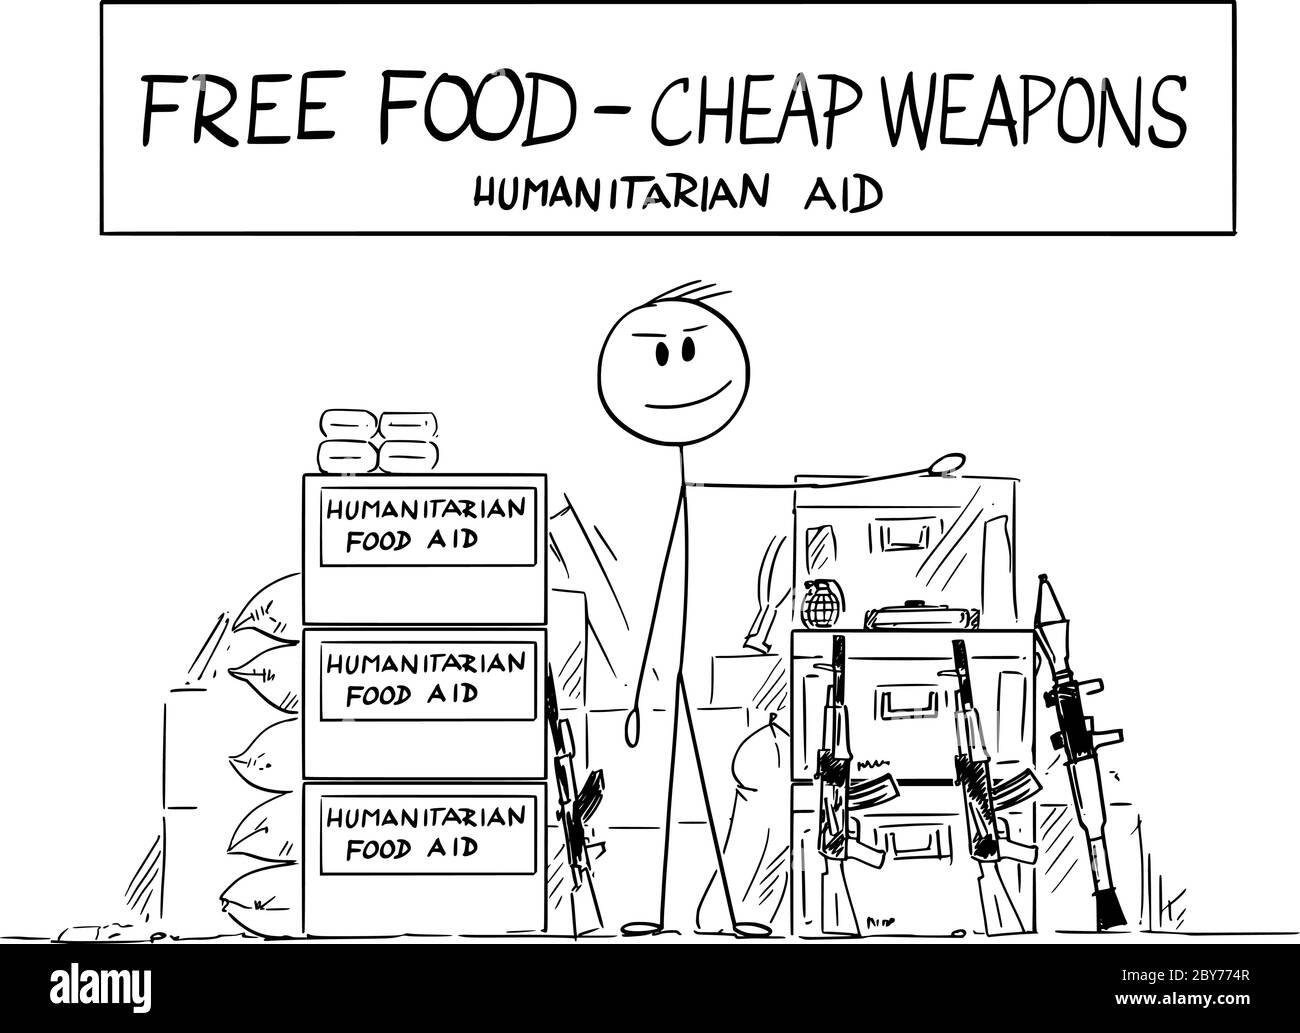 Vektor Cartoon Stick Figur Zeichnung konzeptionelle Illustration von lokalen Landwirt, die humanitäre Hilfe Lebensmittel und Waffen auf dem lokalen Markt in Entwicklungsländern in Afrika oder Asien. Stock Vektor